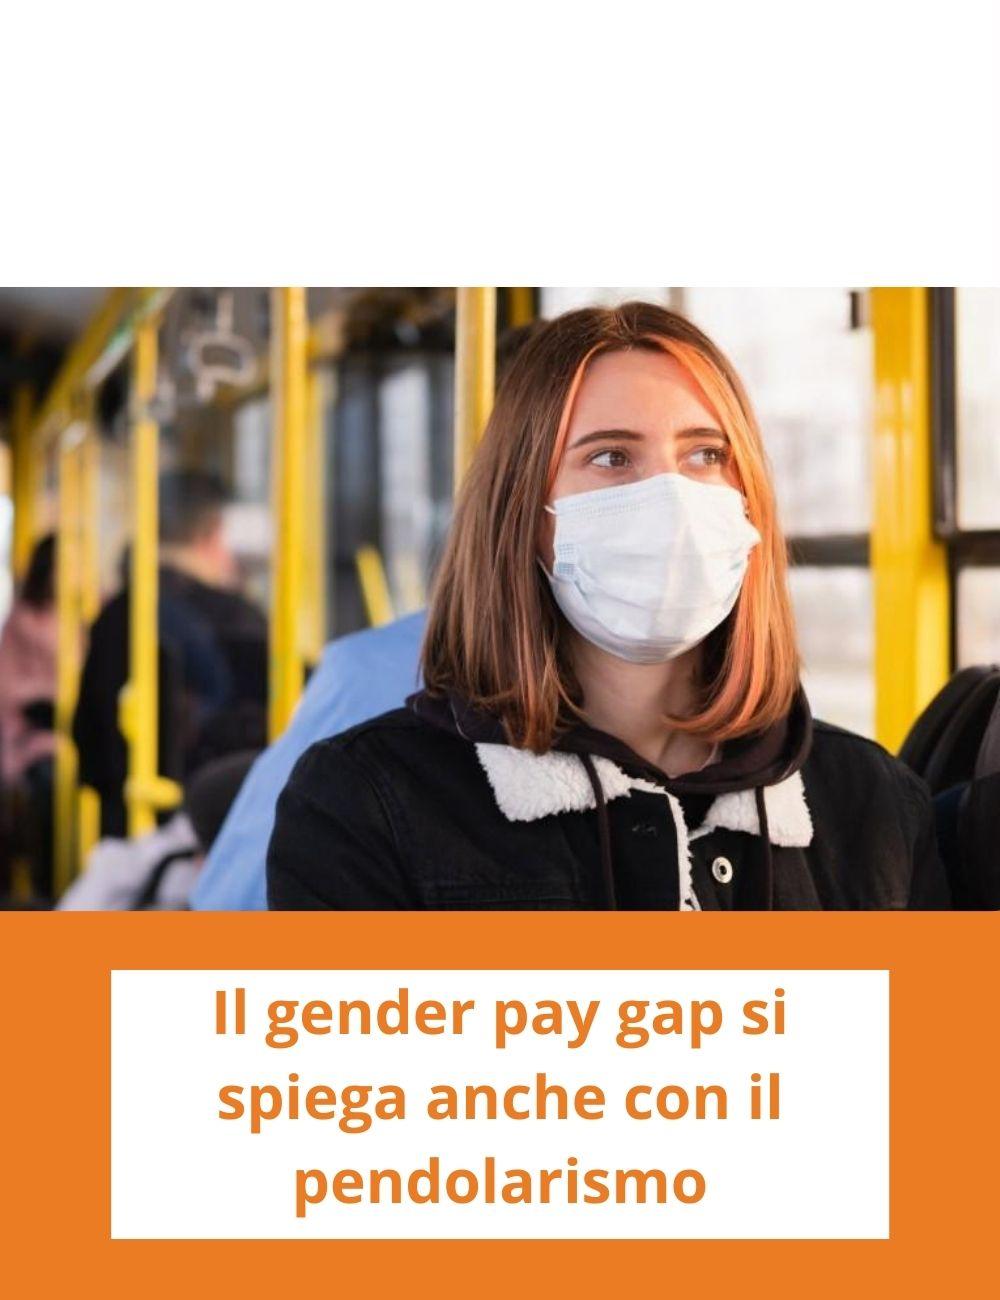 Immagine con link ad articoli con temi simili. Una ragazza con la mascherina su un mezzo pubblico rimanda a un articolo intitolato: Il gender pay gap si spiega anche con il pendolarismo